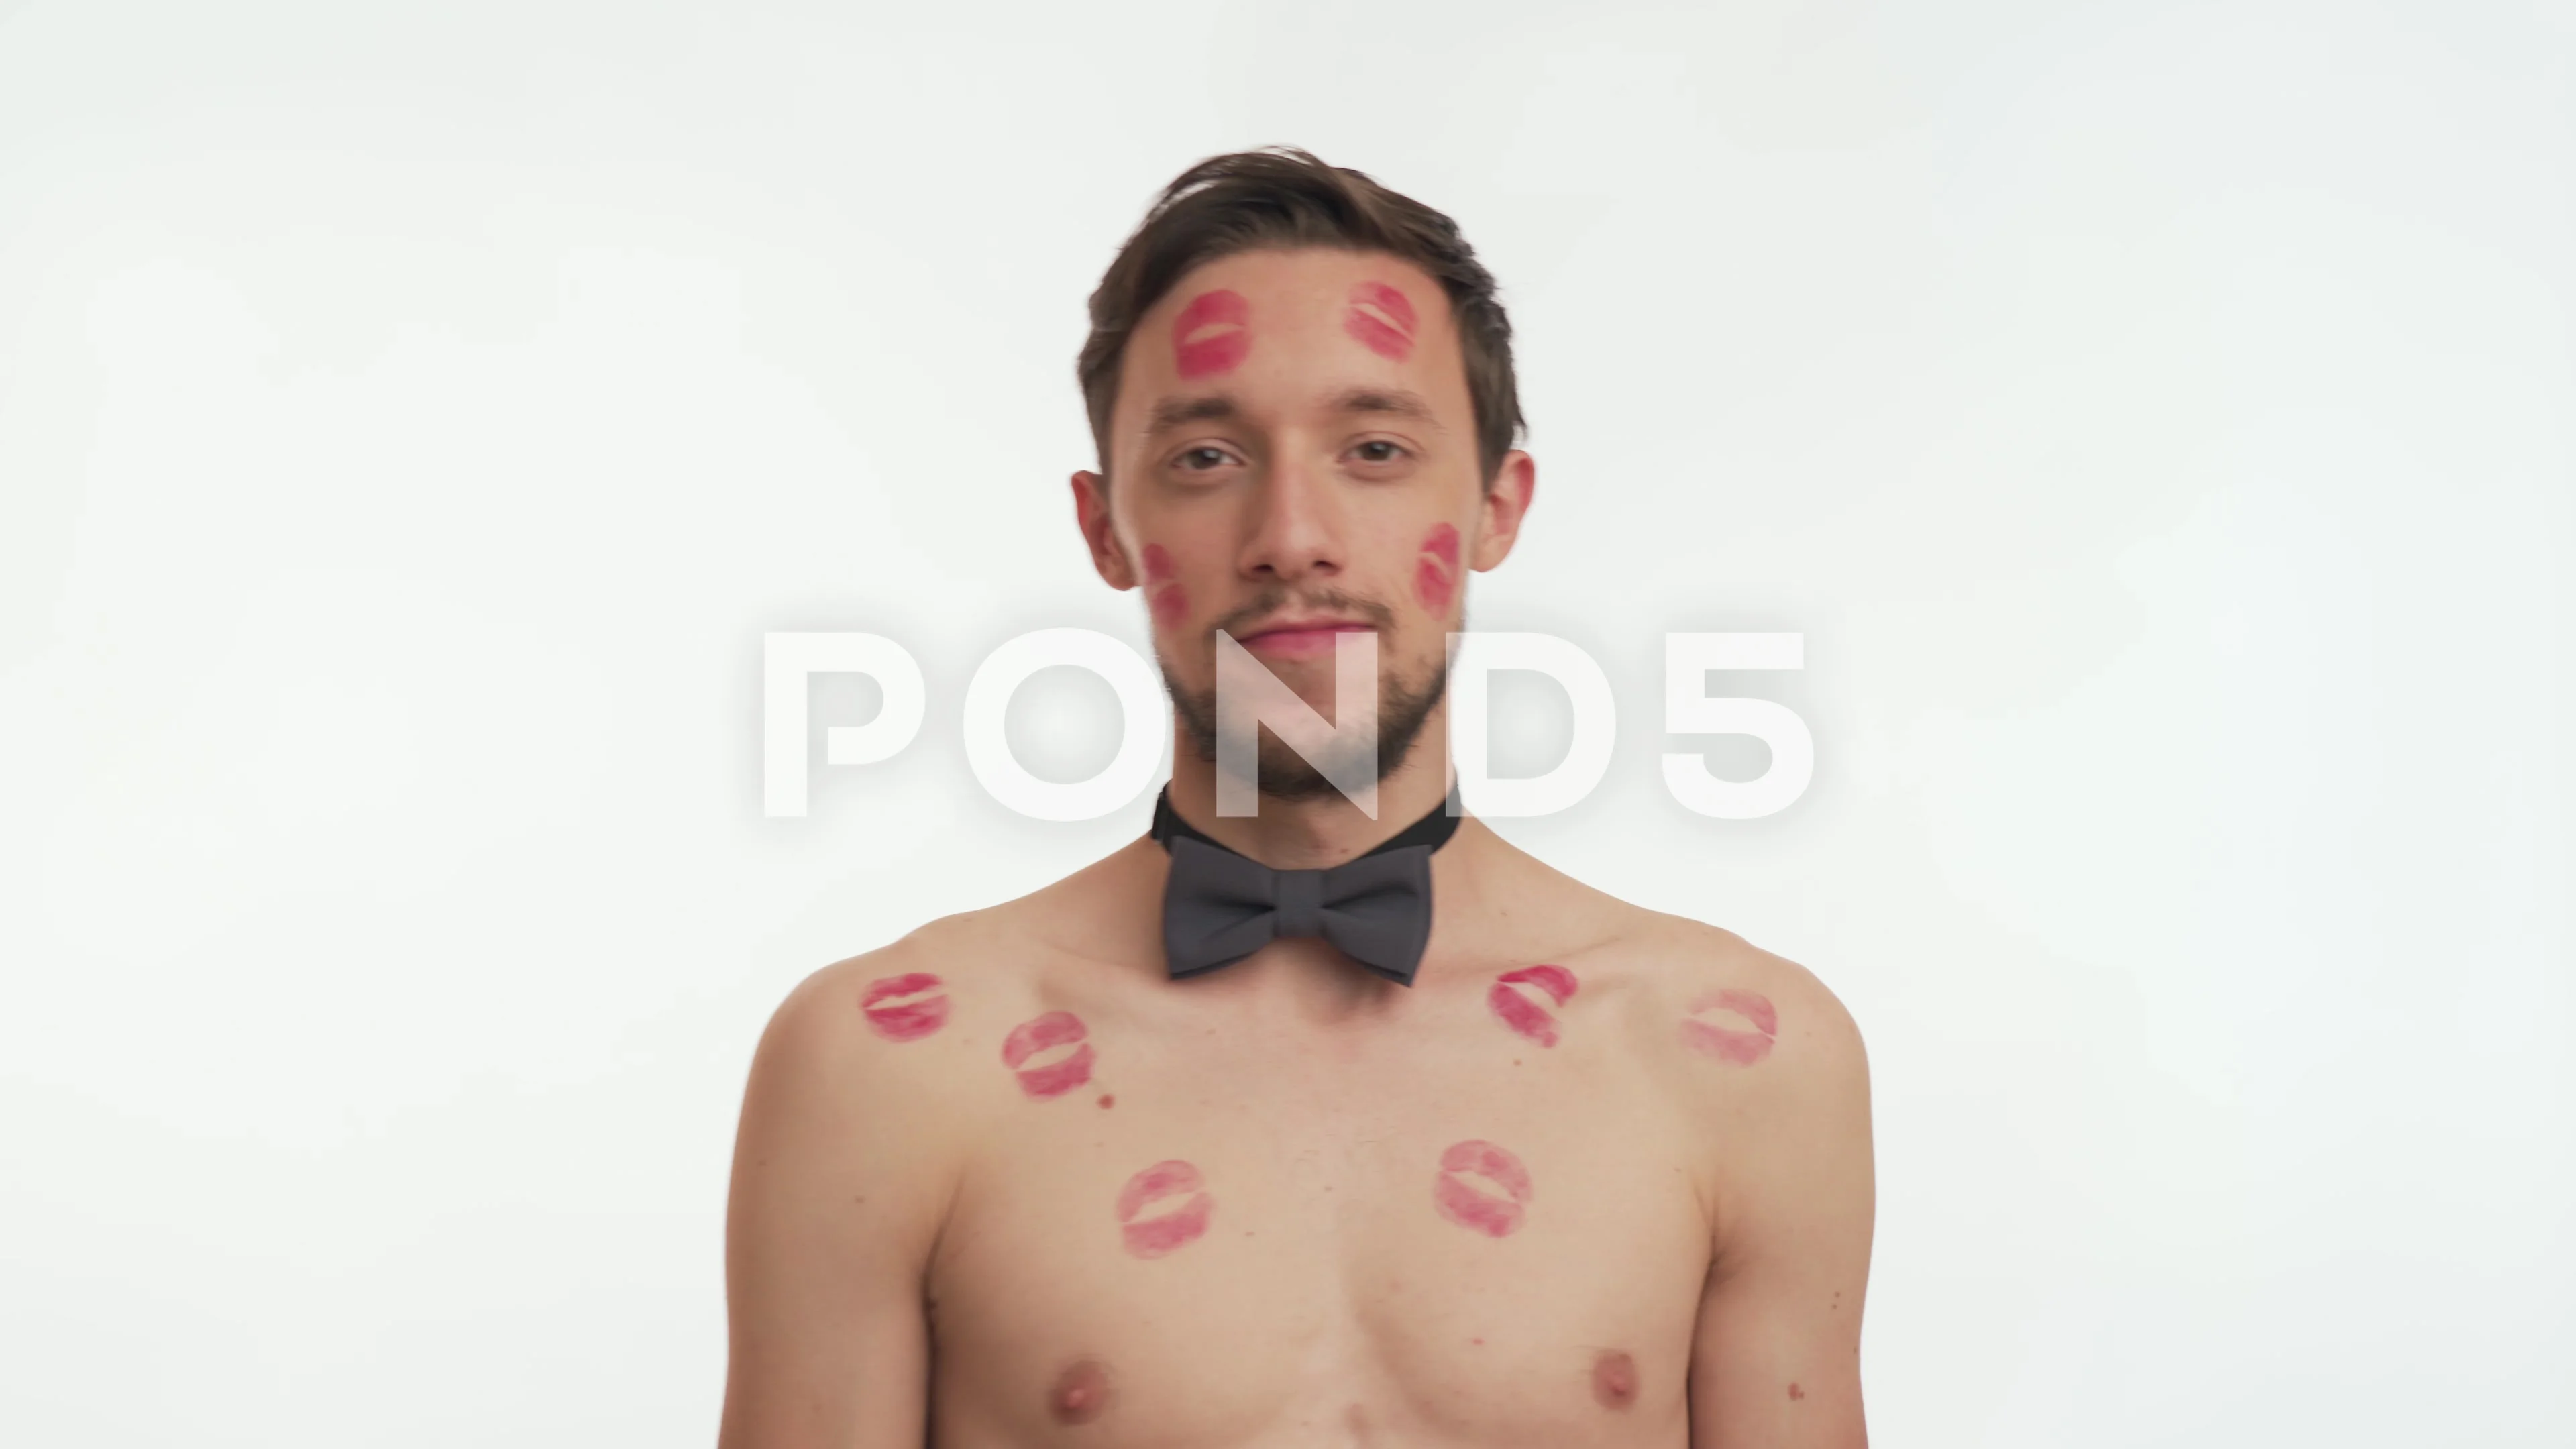 danny capello recommends red lipstick kiss marks pic